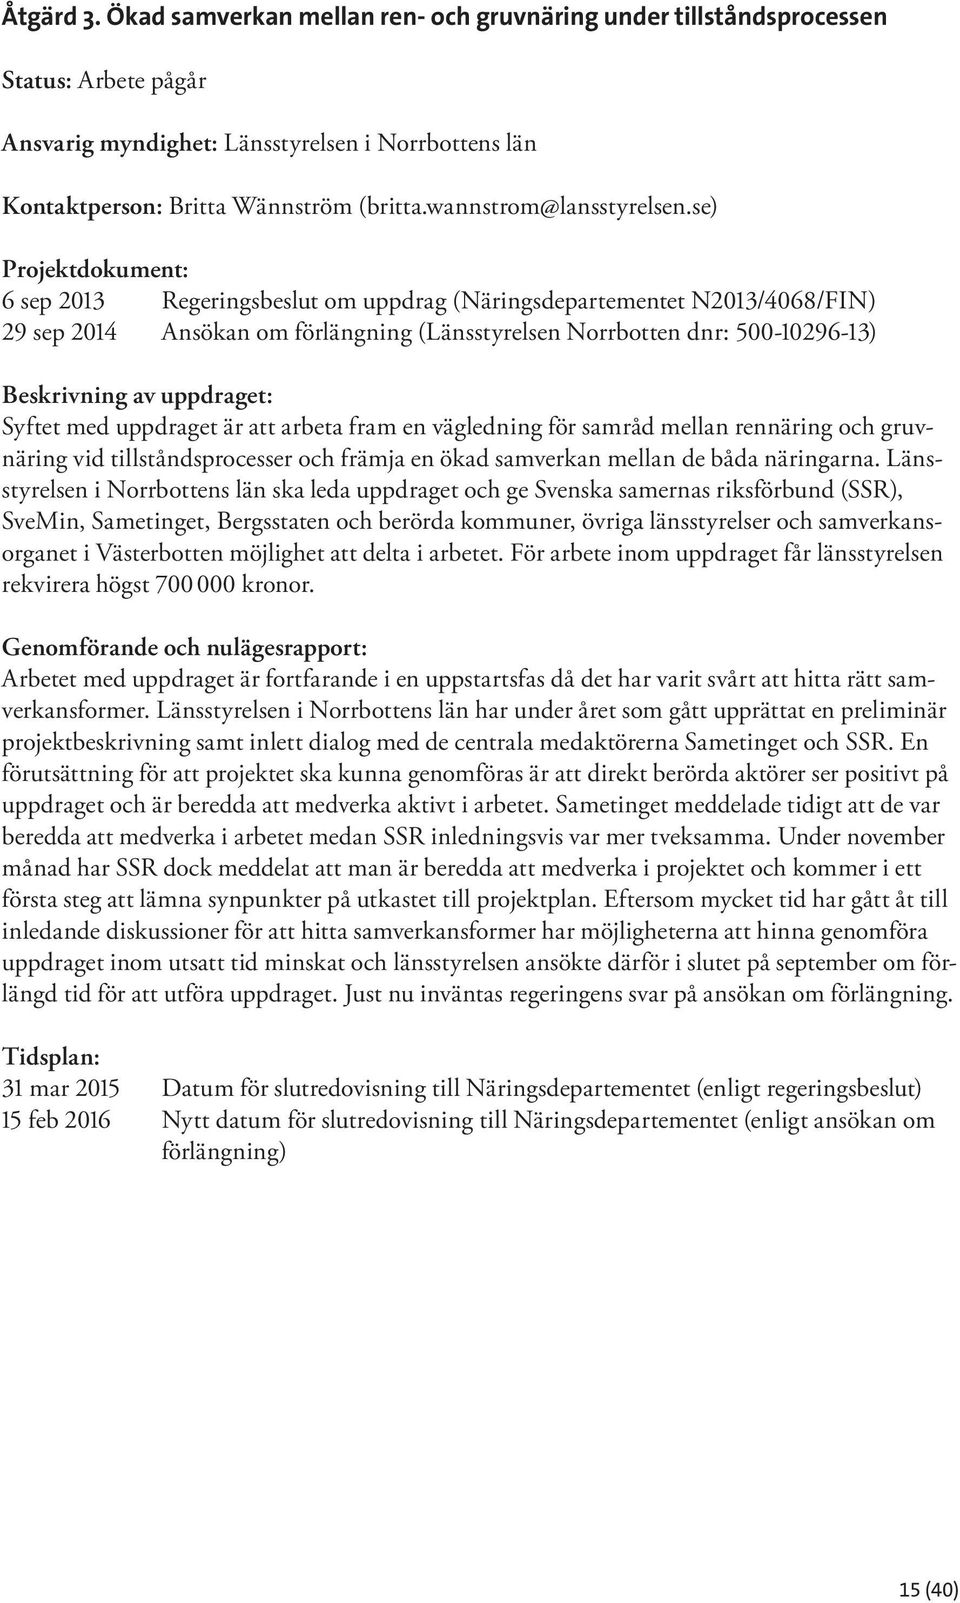 se) Projektdokument: 6 sep 2013 Regeringsbeslut om uppdrag (Näringsdepartementet N2013/4068/FIN) 29 sep 2014 Ansökan om förlängning (Länsstyrelsen Norrbotten dnr: 500-10296-13) Beskrivning av